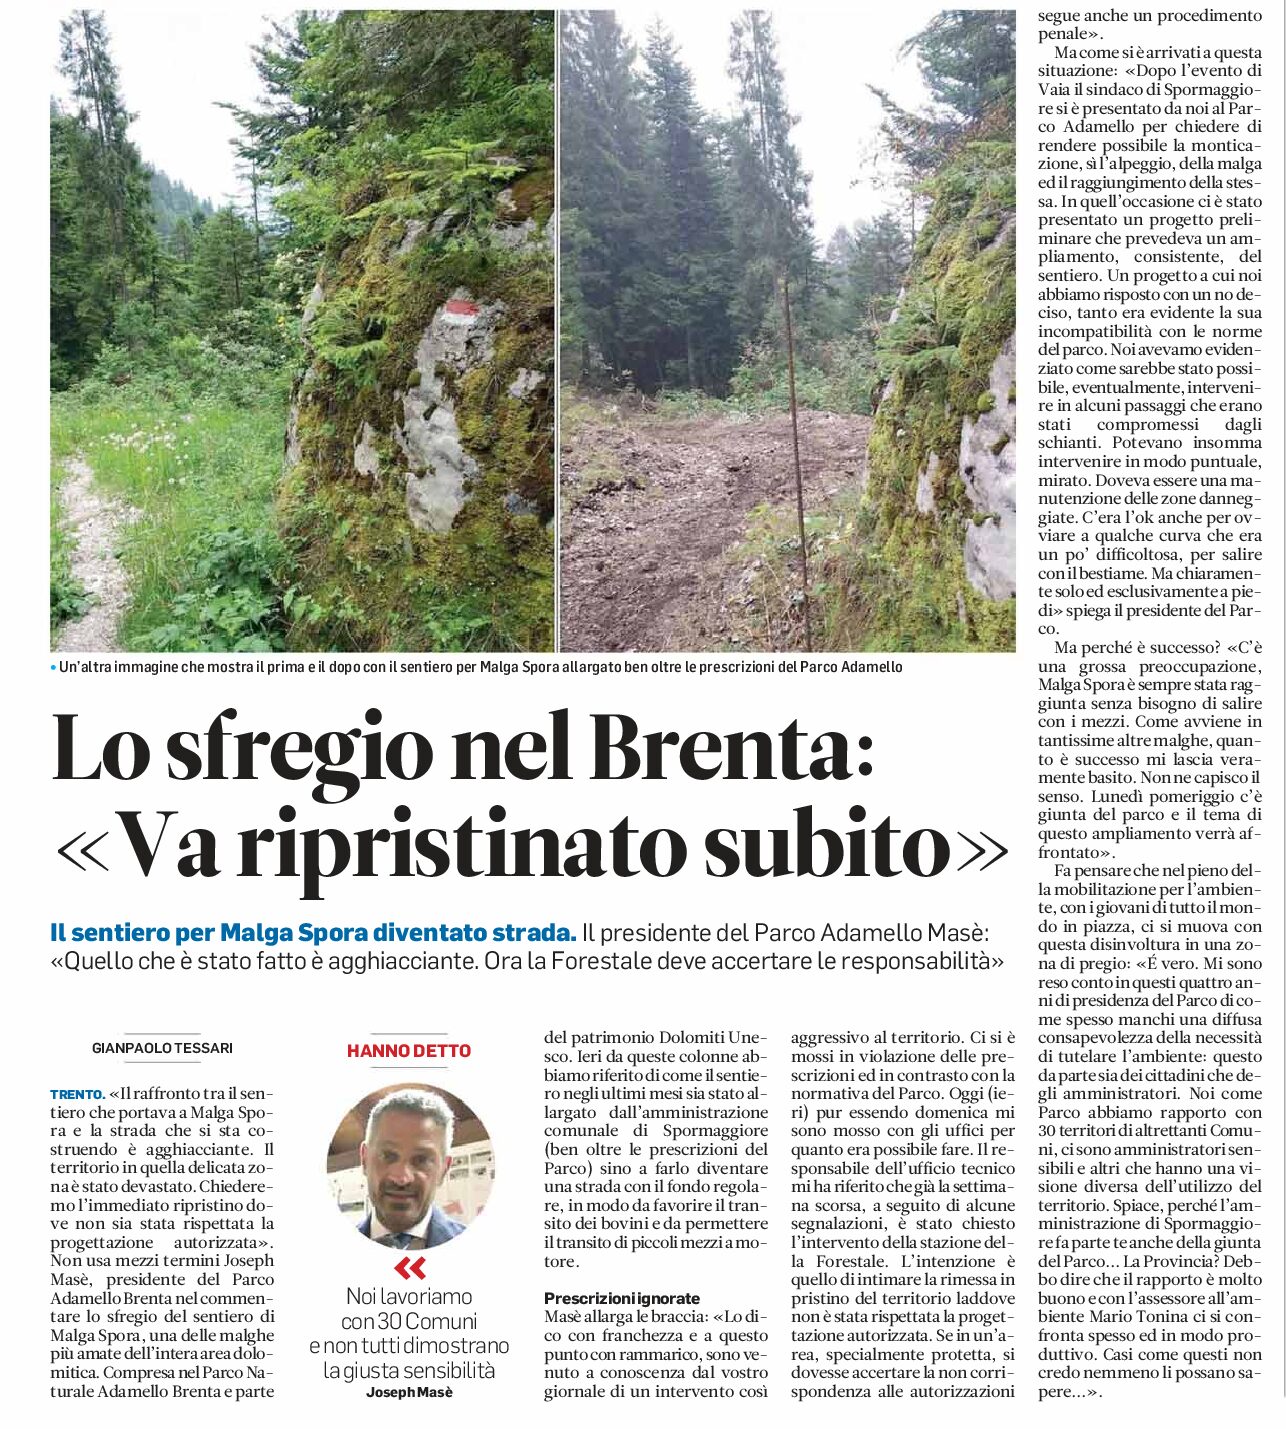 Parco Adamello Brenta: il sentiero per malga Spora è diventato strada, “va ripristinato subito”